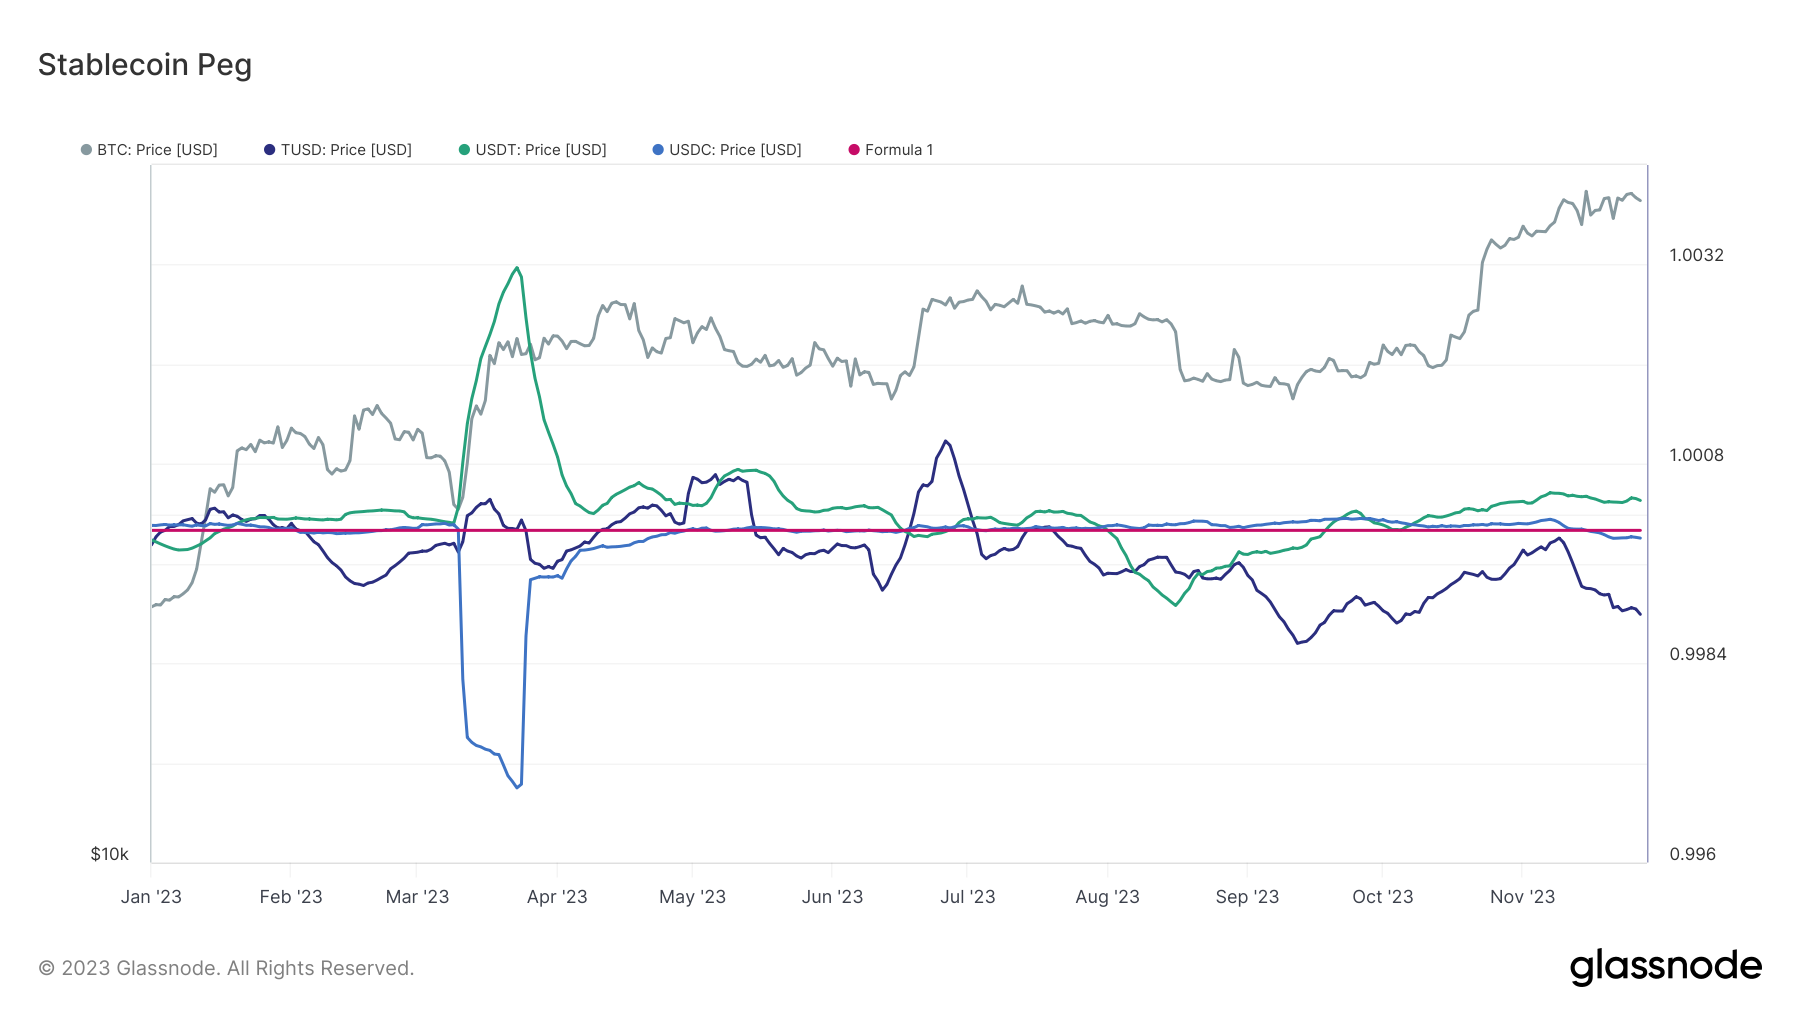 תנודות המחירים ב-stablecoins מצביעות על סנטימנטים שונים בשווקים